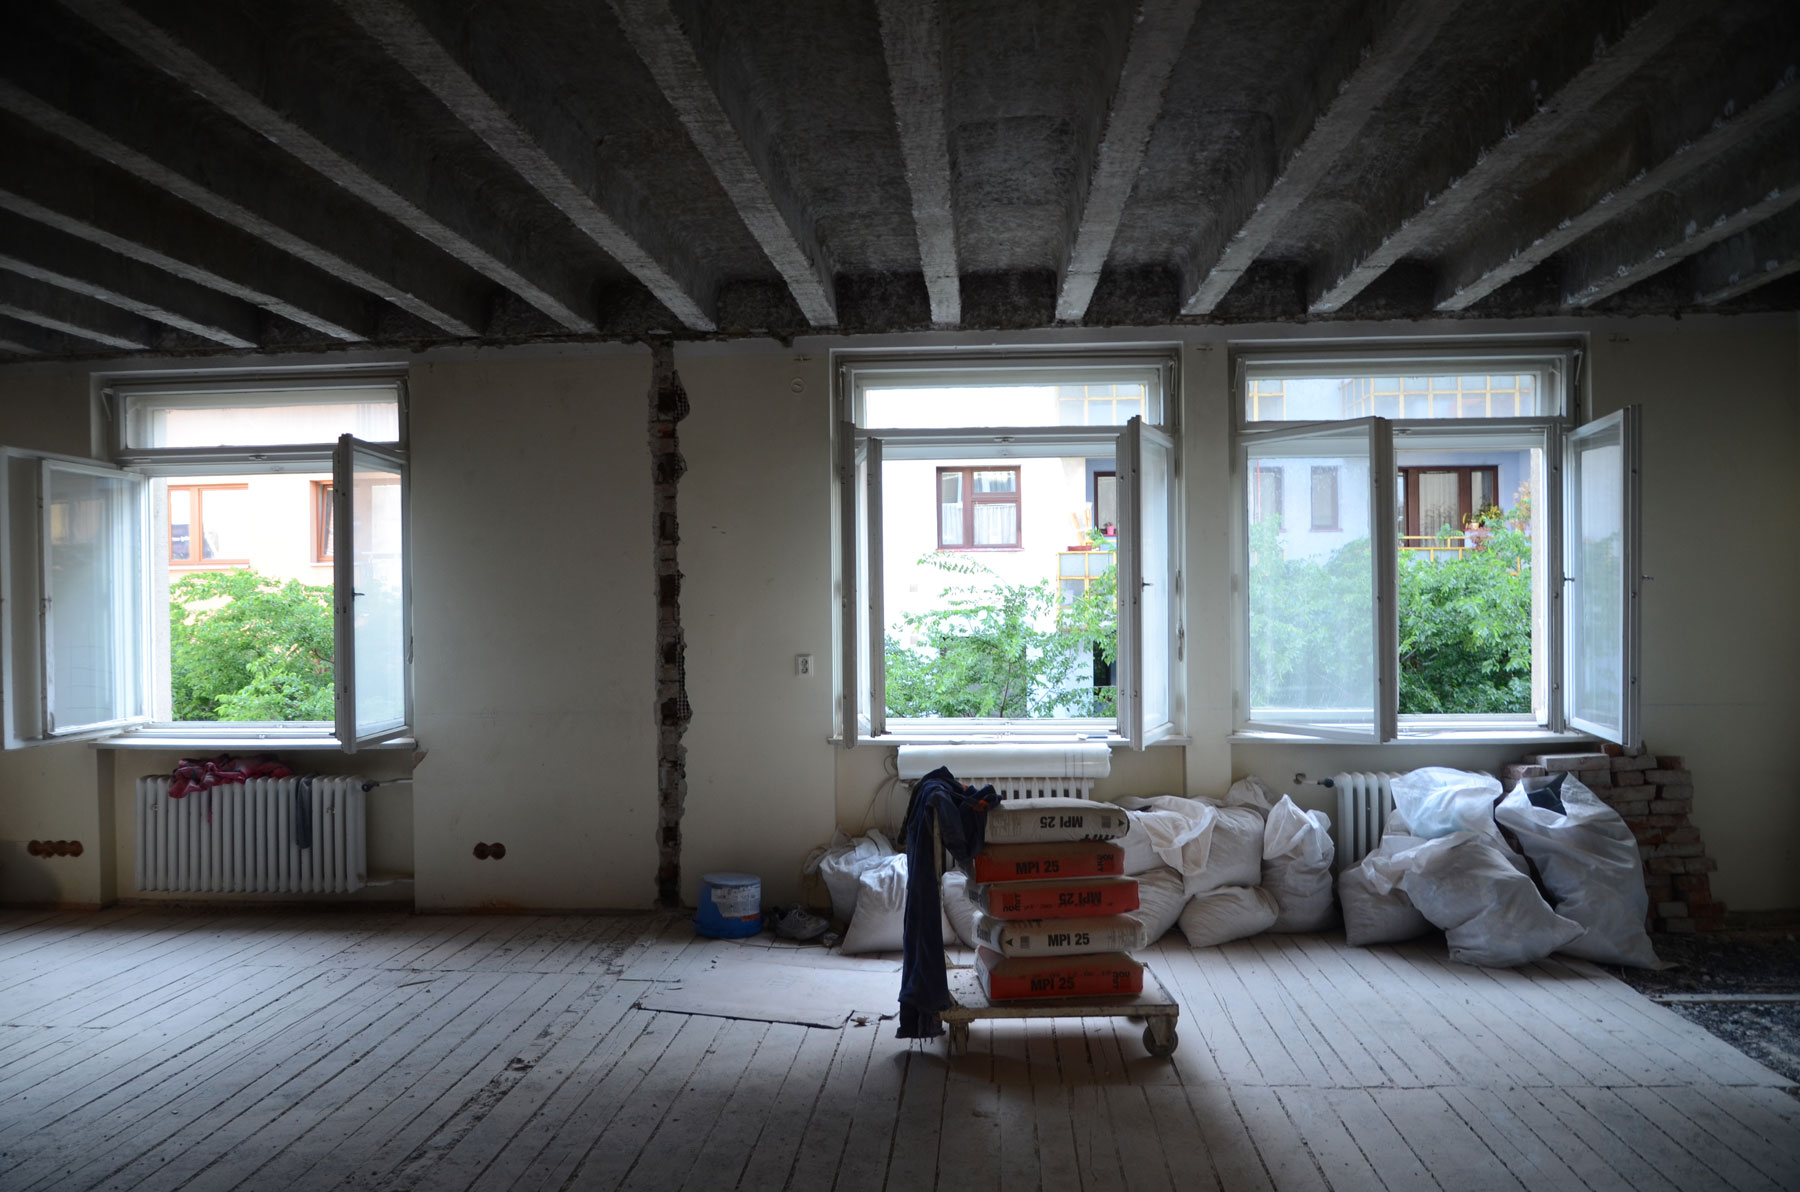 Obr. 5, 6 Zmena dispozície bytu začala „od podlahy“. Vyčistili sa priestory, aby sa mohol zrealizovať zámer, a priznali sa stropné trámy.